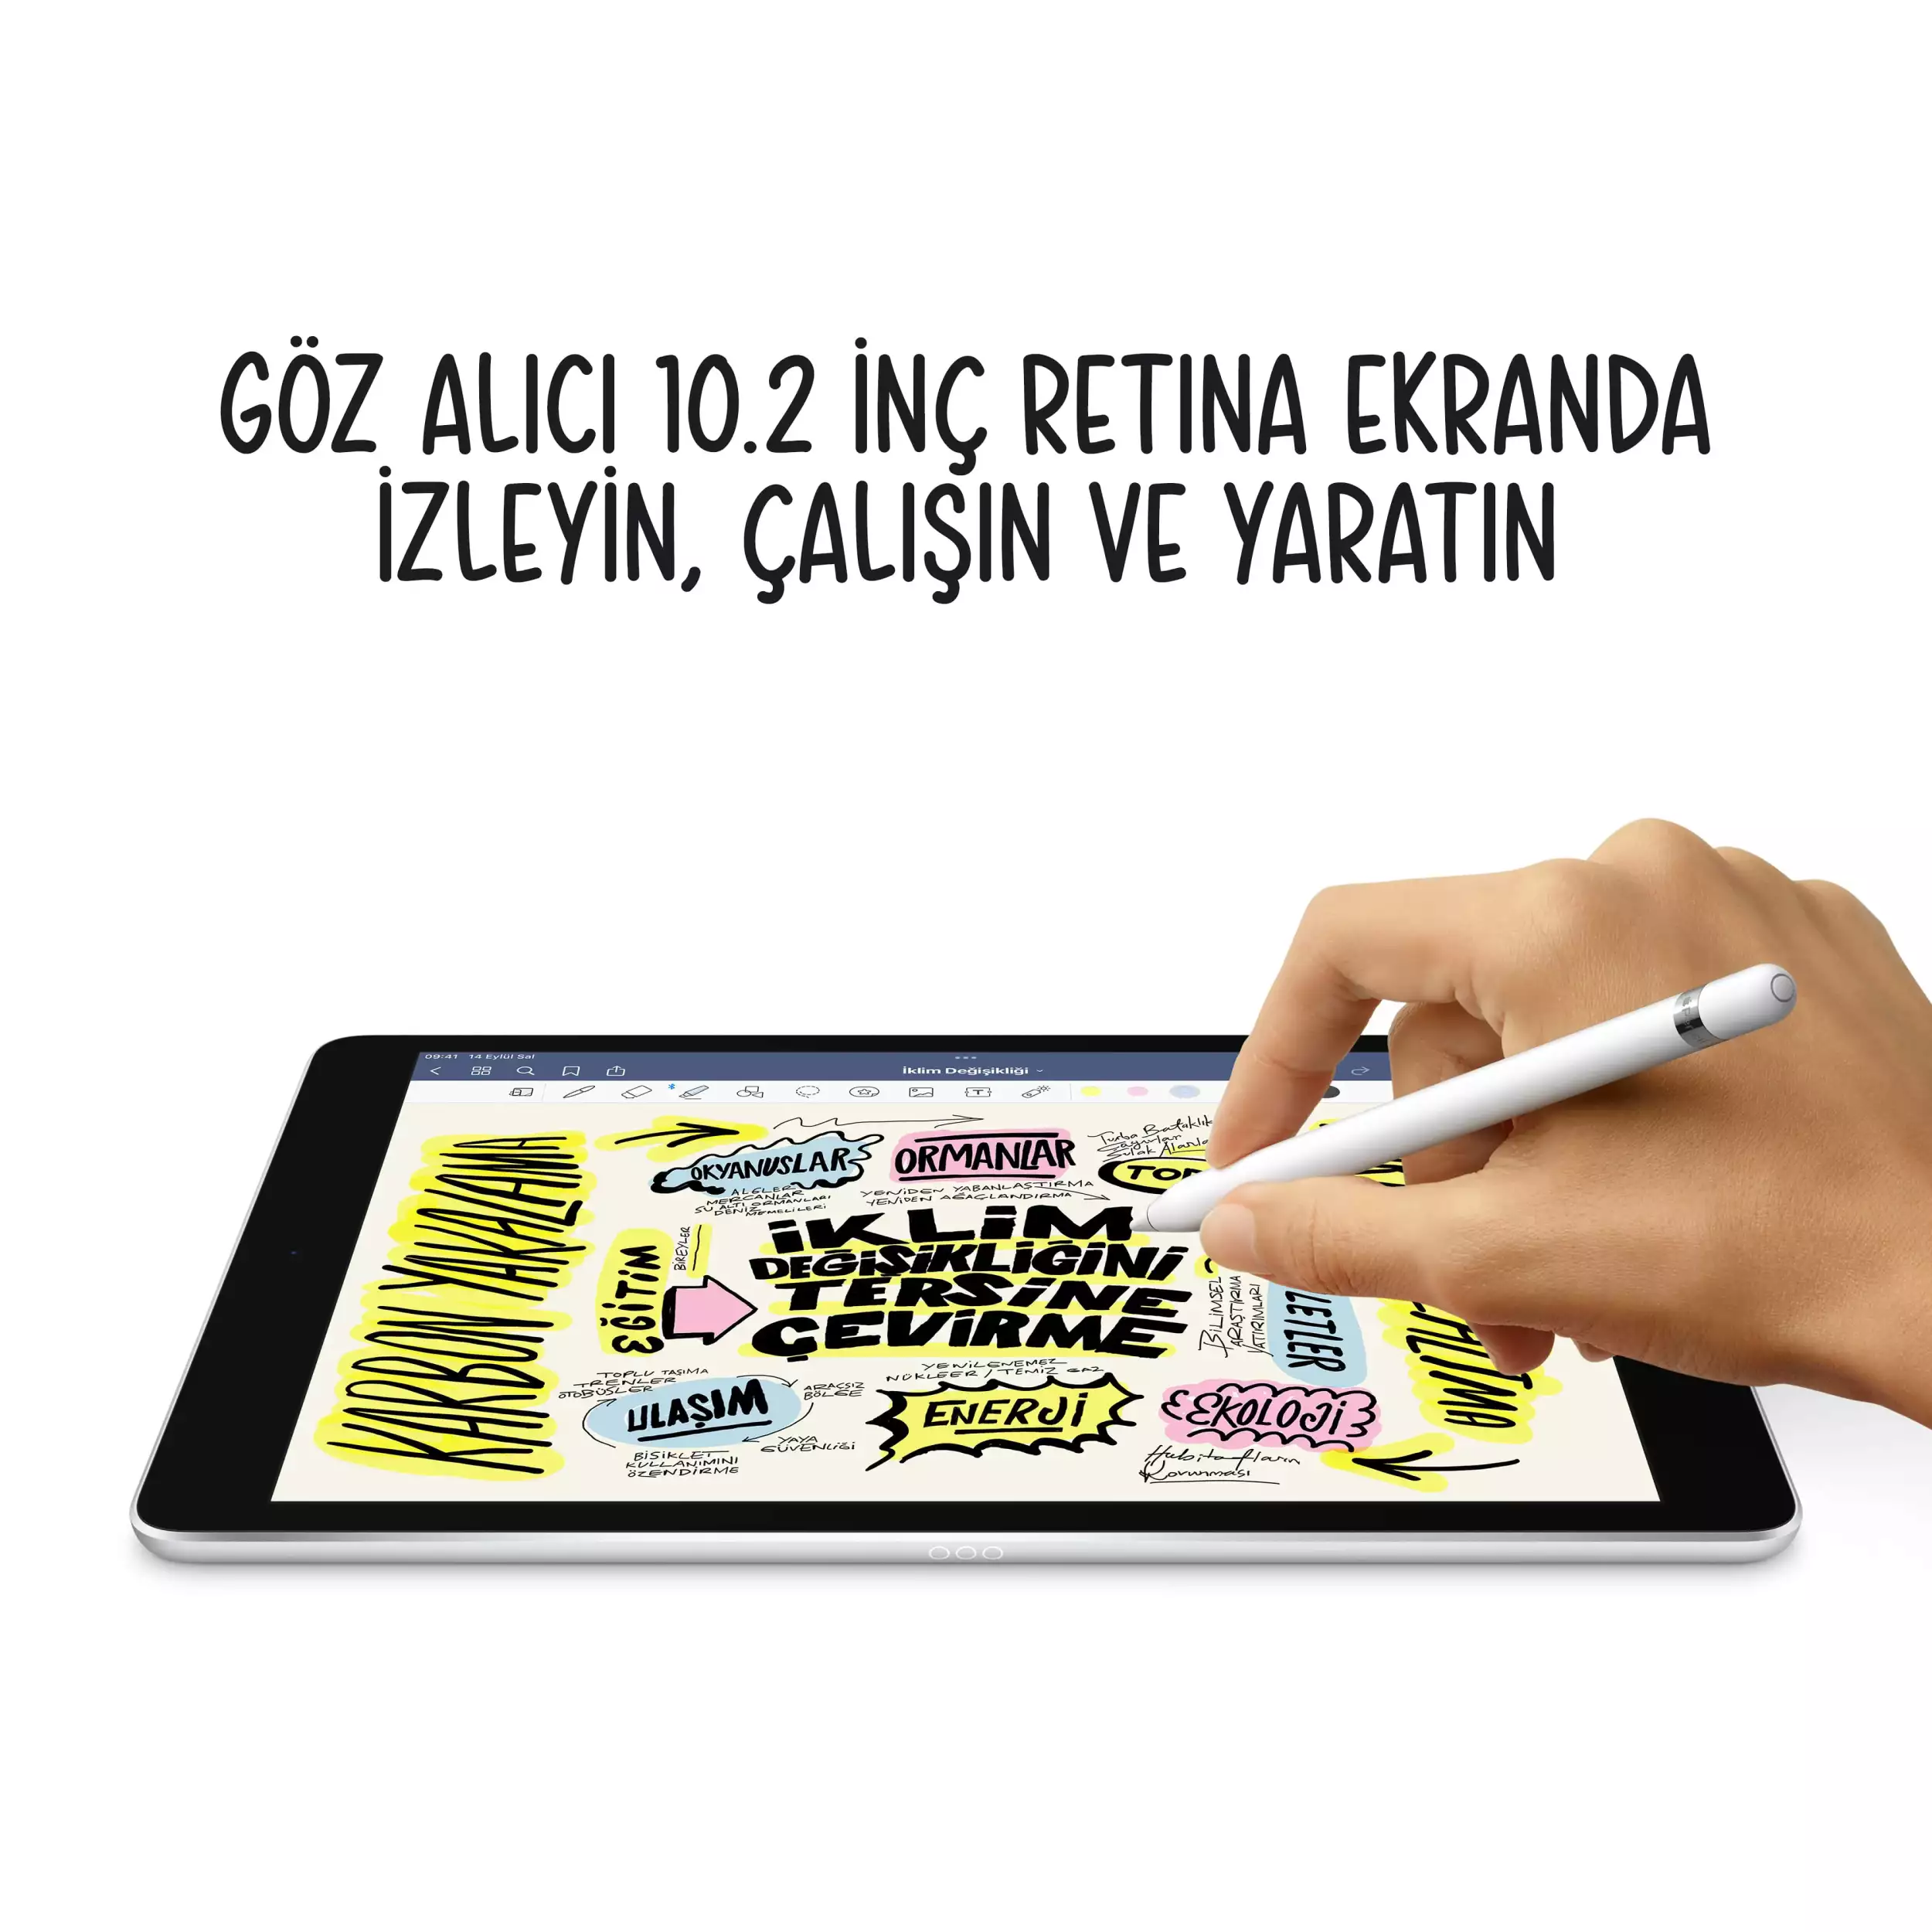 iPad 10.2 inç Wi-Fi + Cellular 64GB Gümüş MK493TU/A